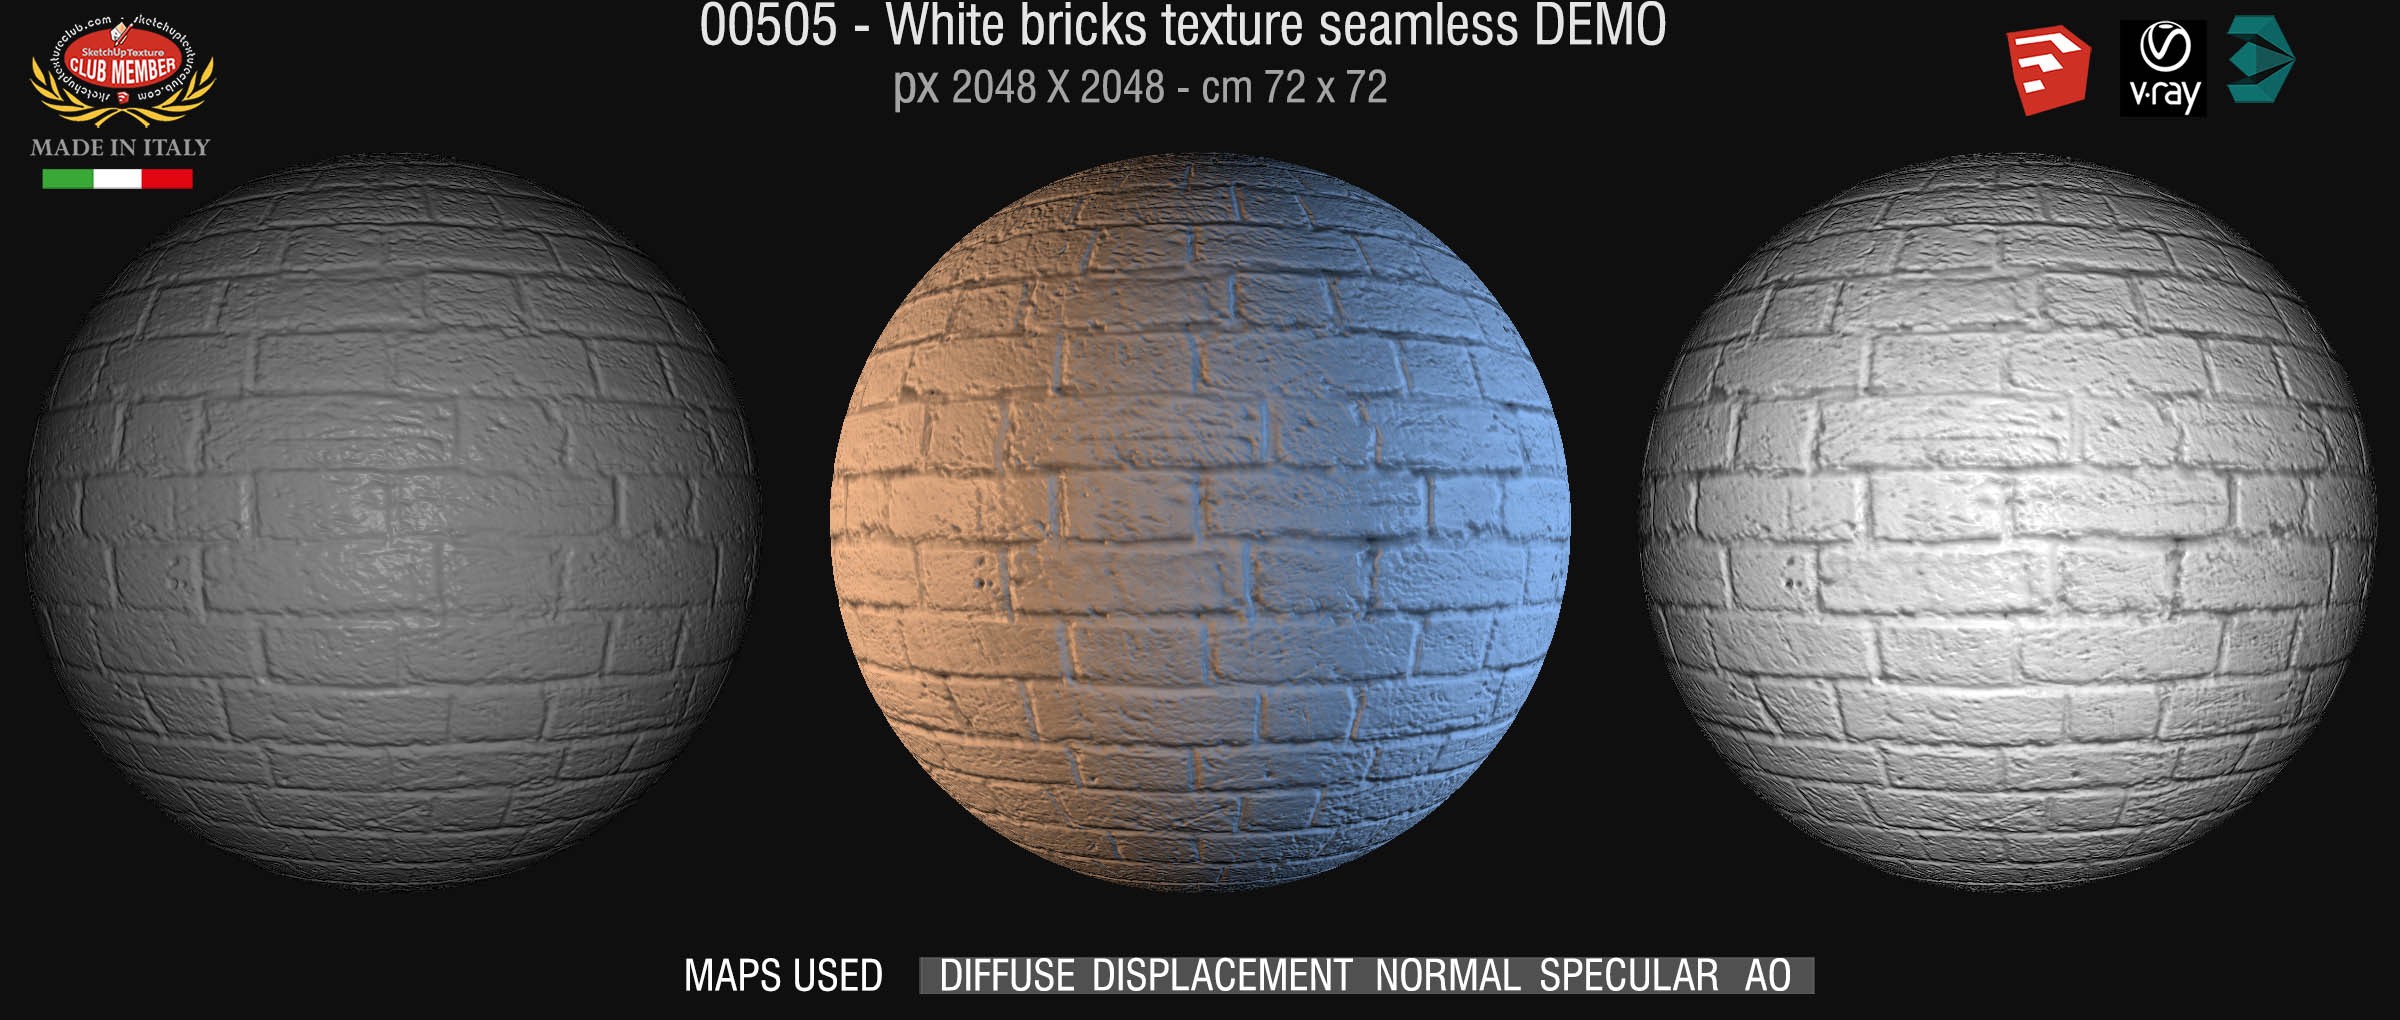 00505 White bricks texture seamless + maps DEMO